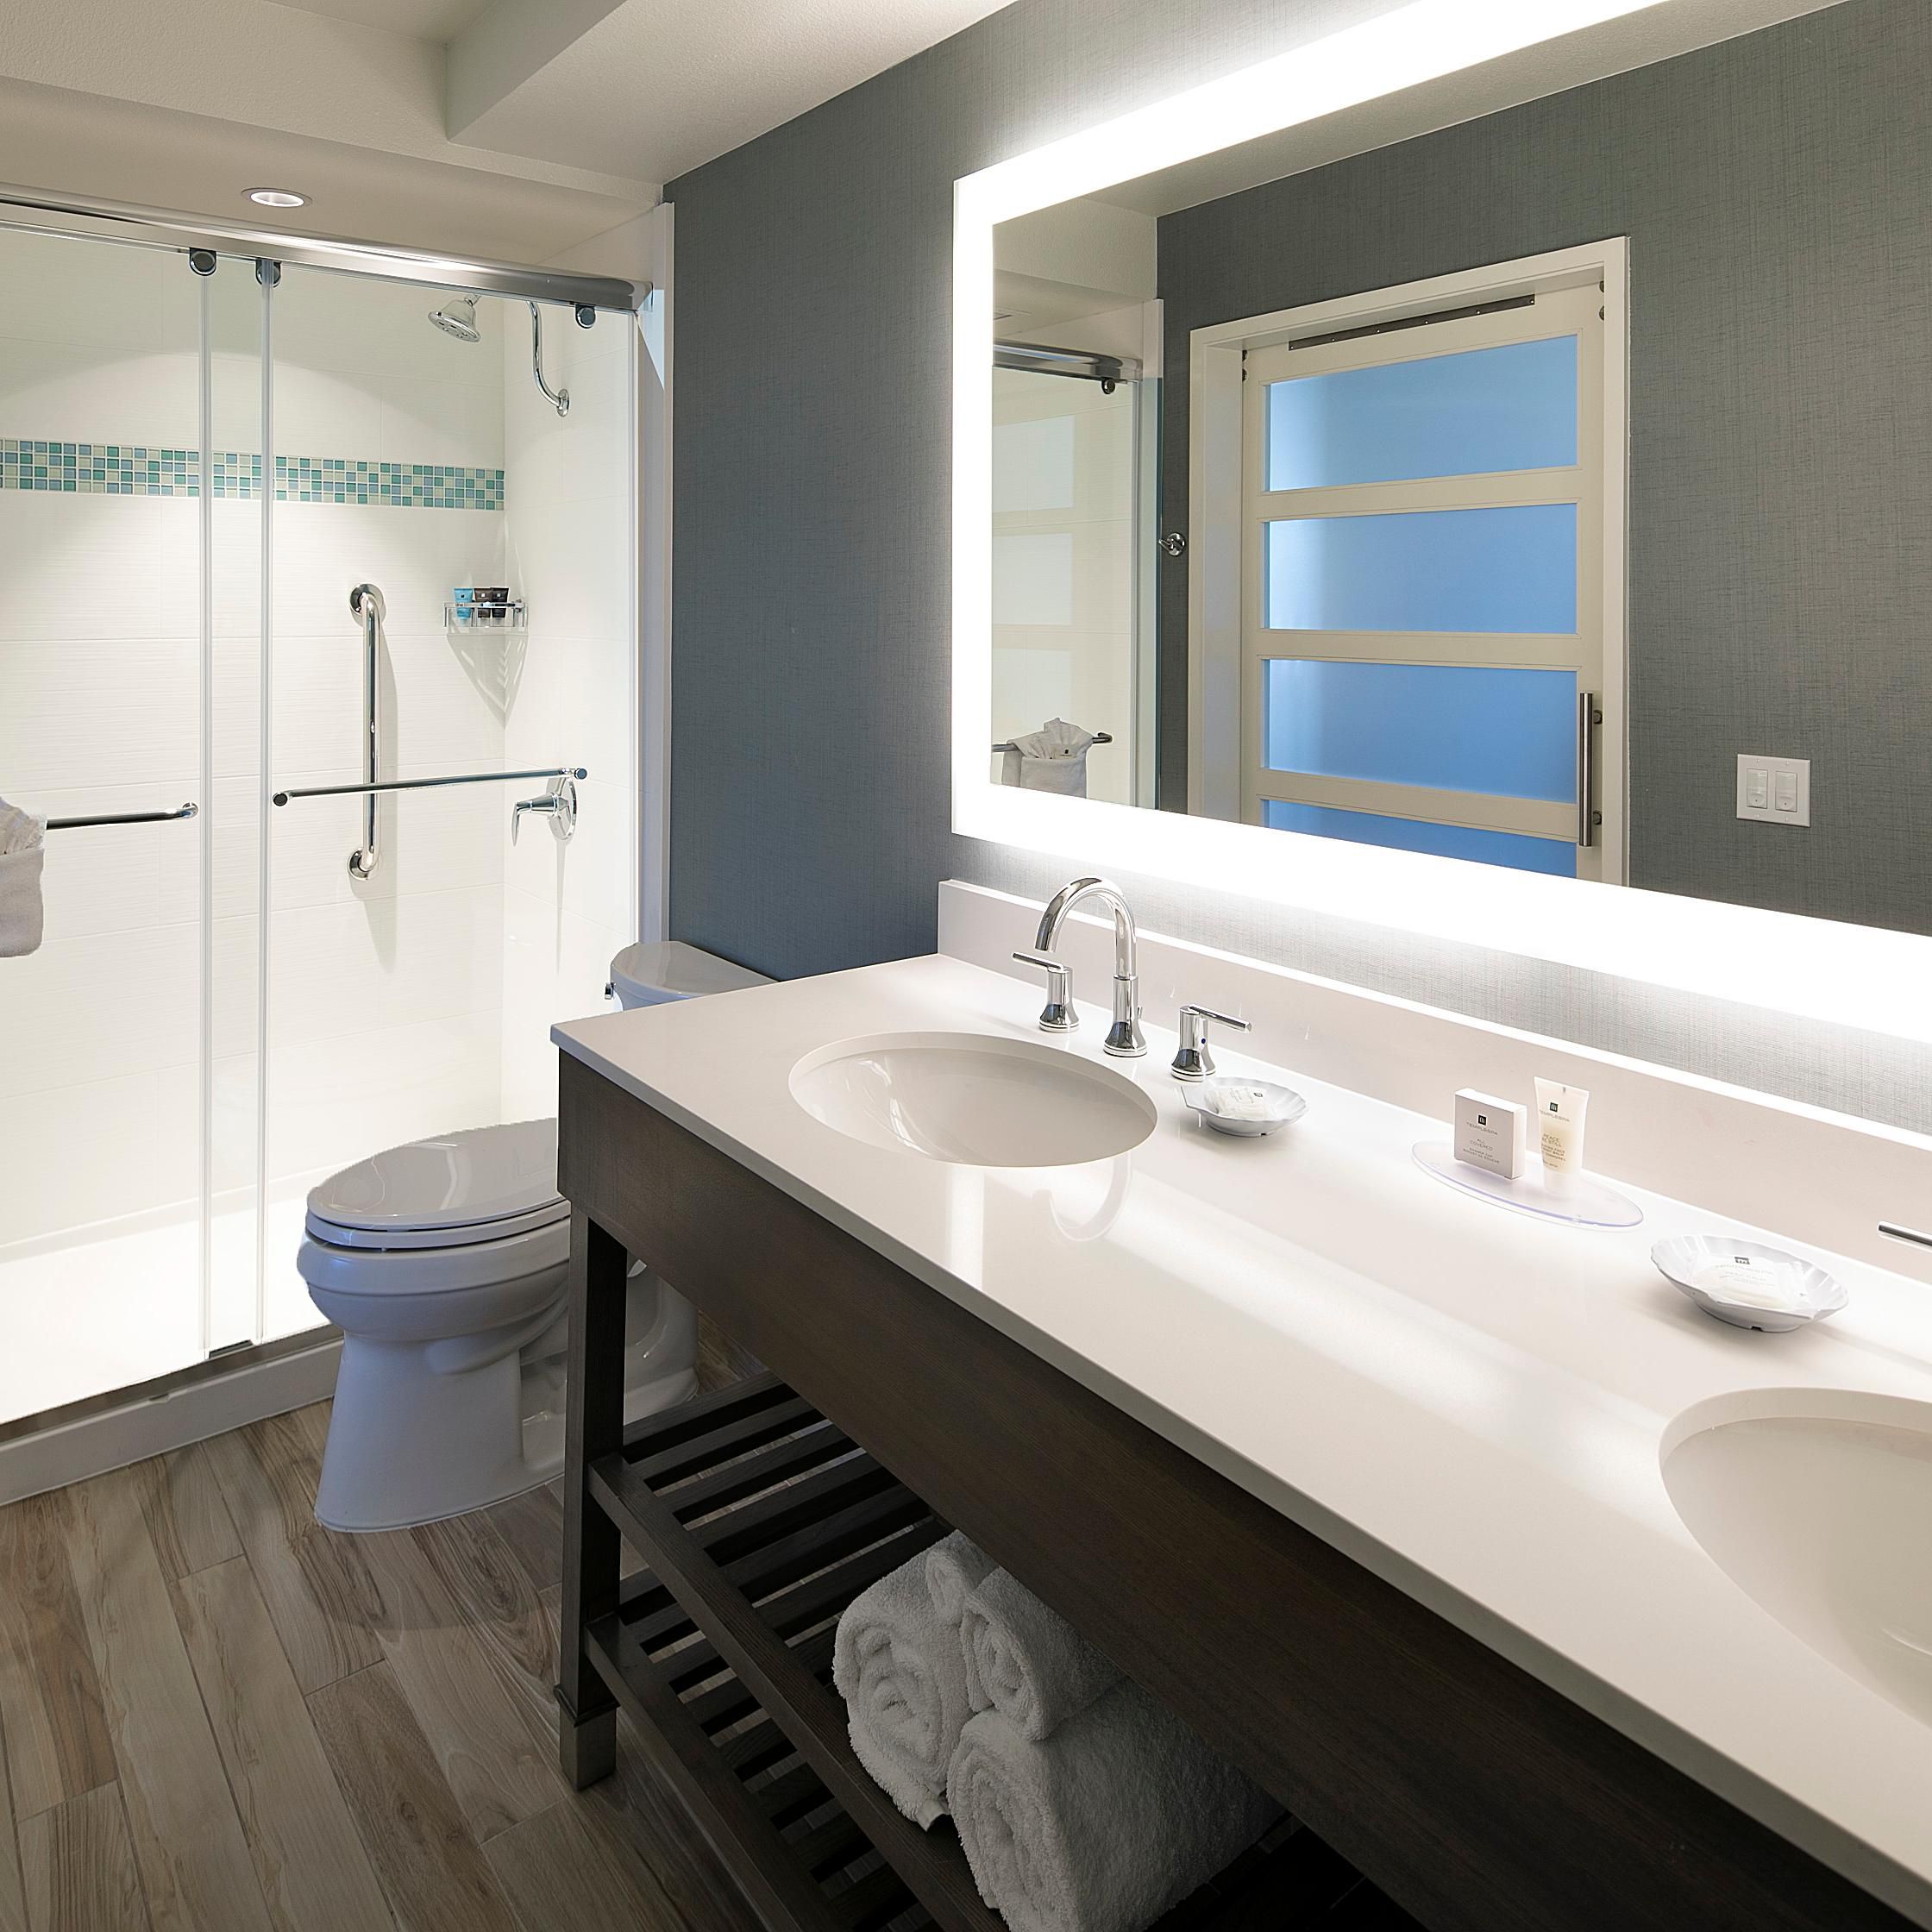 King Bedroom Suite - Shower Only, Double Vanity Bathroom 